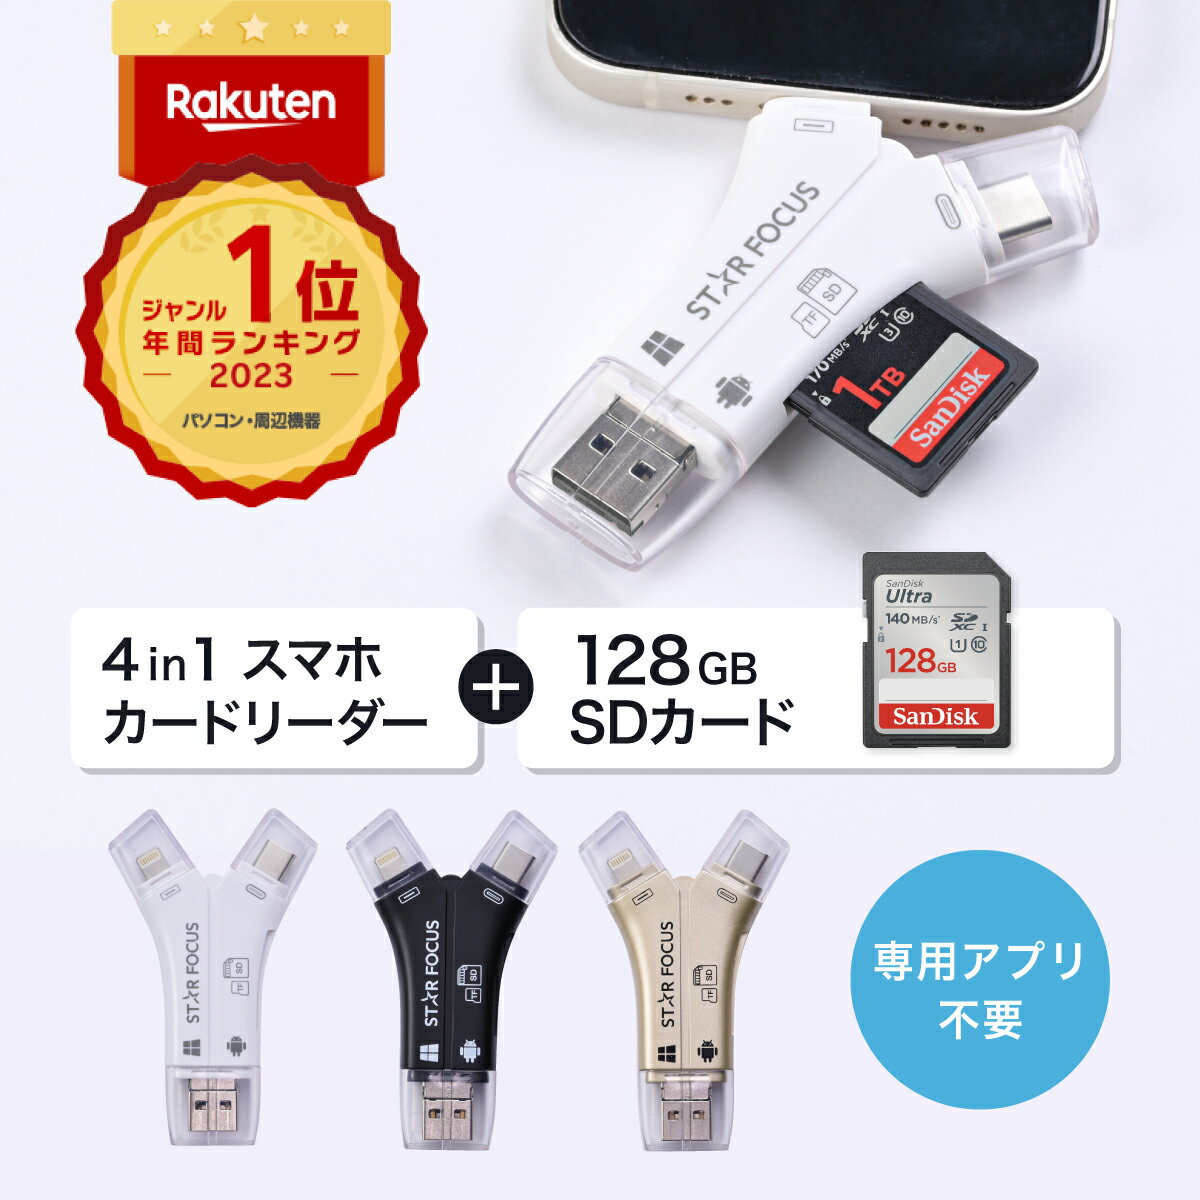 【SDカード 128GBセット】【楽天年間1位】【スターフォーカス正規品】送料無料 1年保証 日本語取説 1TB対応 SDカードリーダー iPhone カードリーダー バックアップ USB USBメモリ 写真 保存 移動 データ SDカードカメラリーダー スマホ